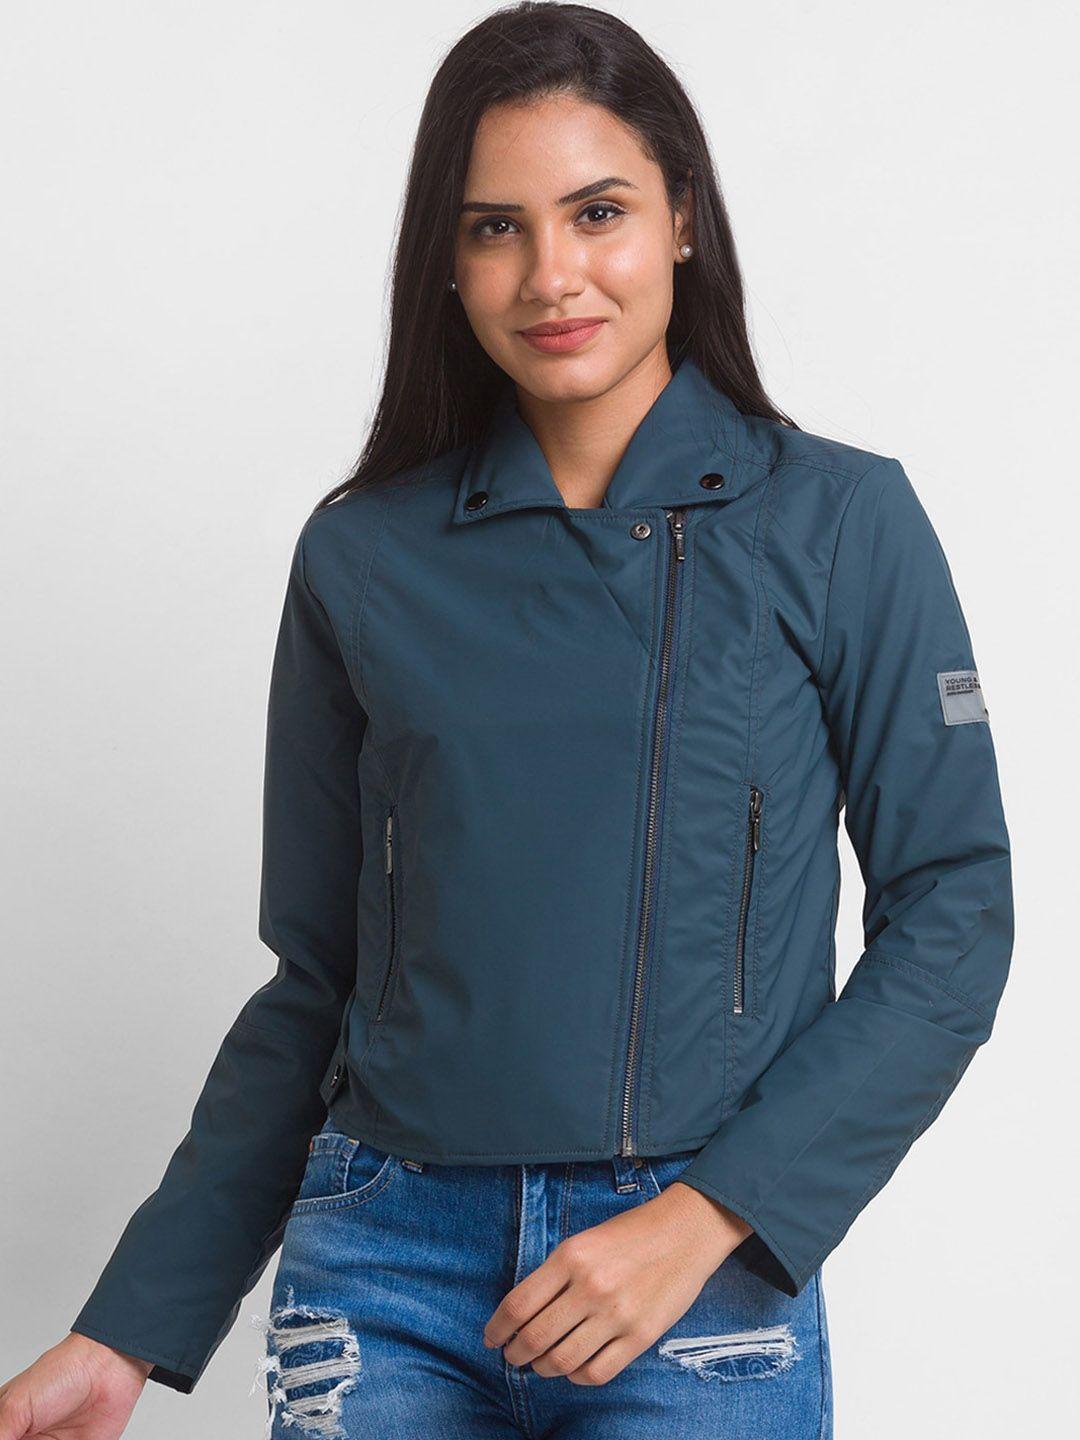 spykar women teal blue crop tailored jacket